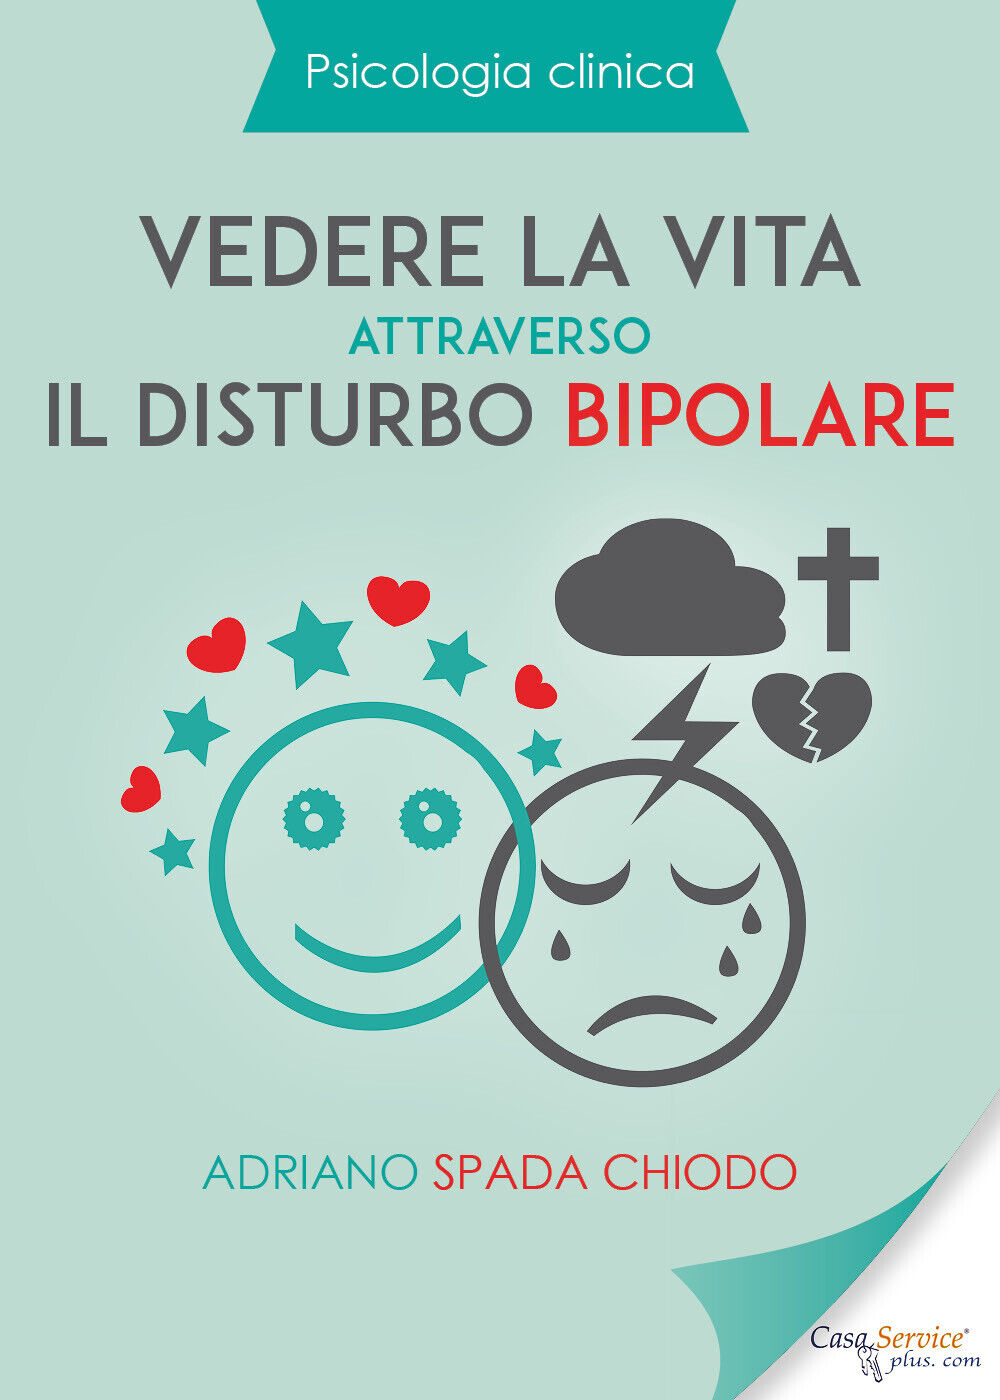 Psicologia Clinica - Vedere la vita attraverso il disturbo bipolare di Adriano S